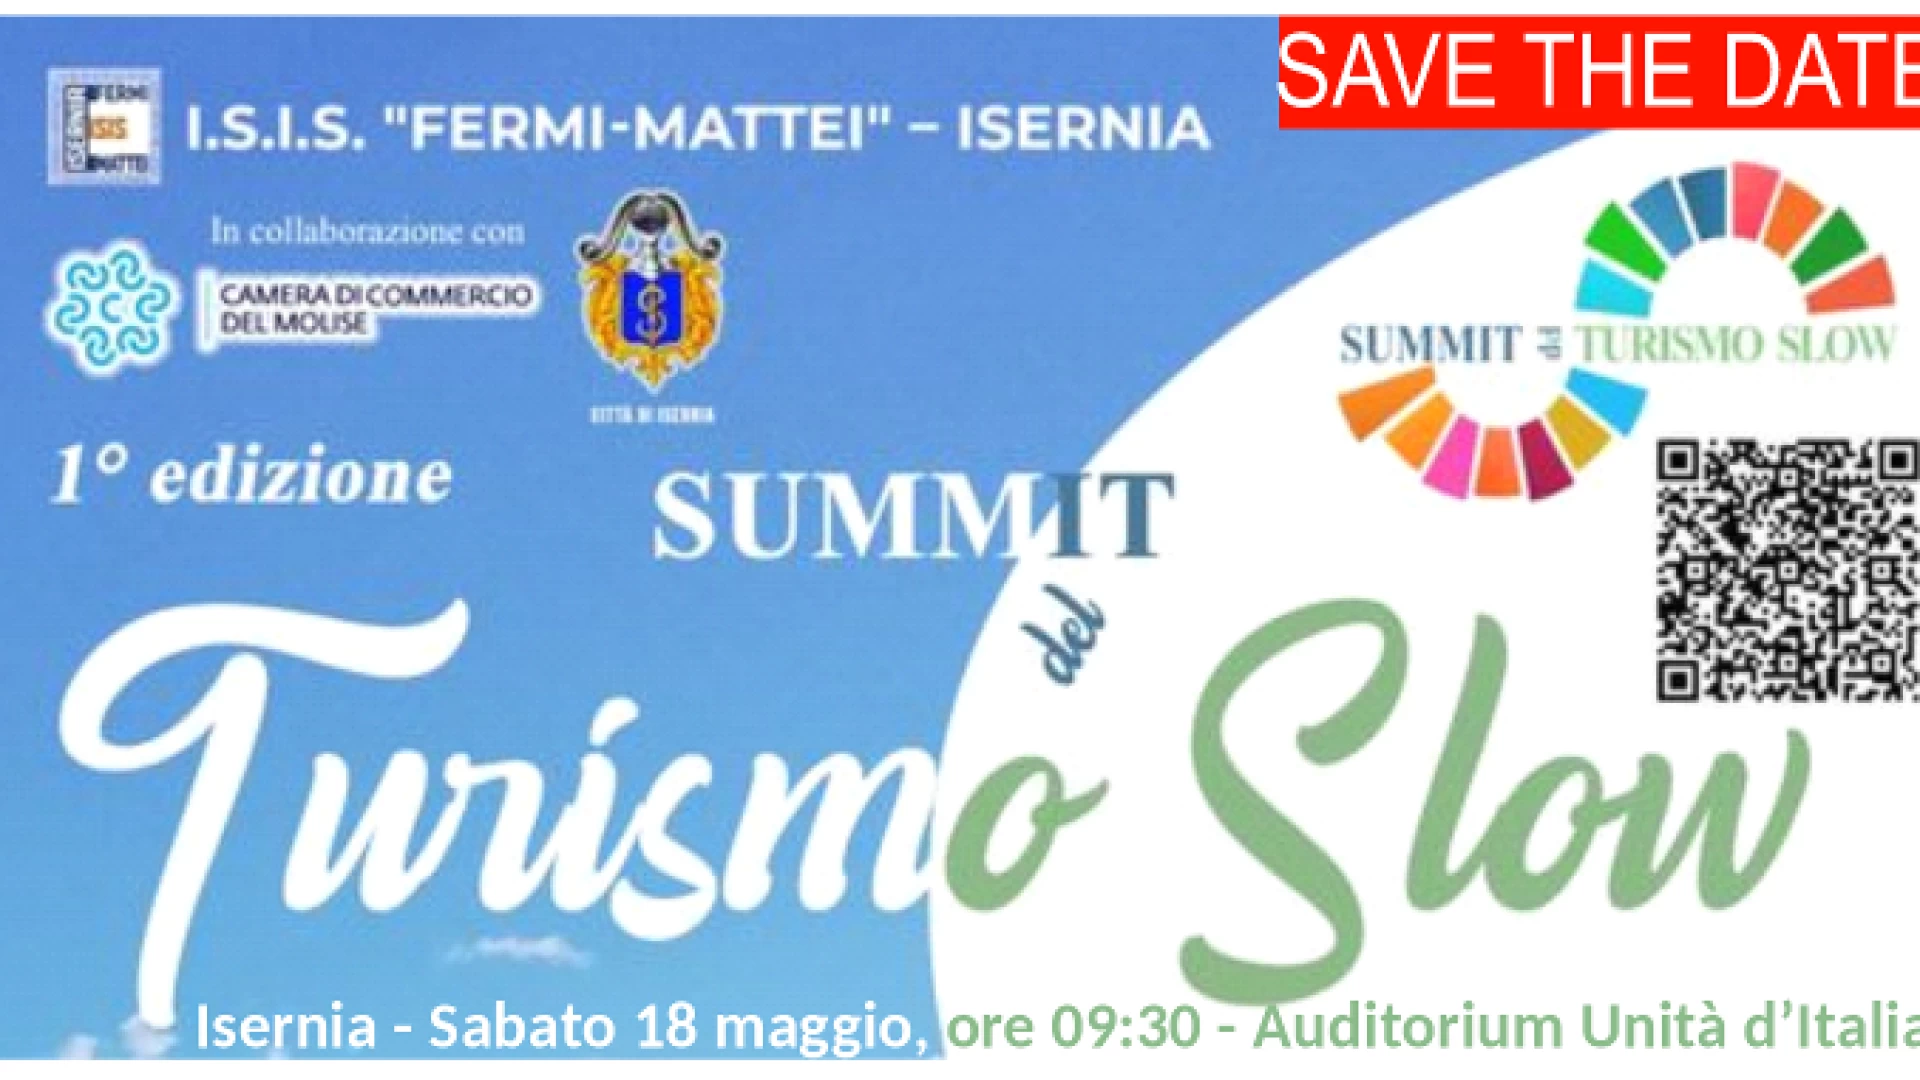 Isernia: al via il summit del turismo Slow. Evento organizzato dall'Isis Fermi Mattei, Camera di Commercio e Comune